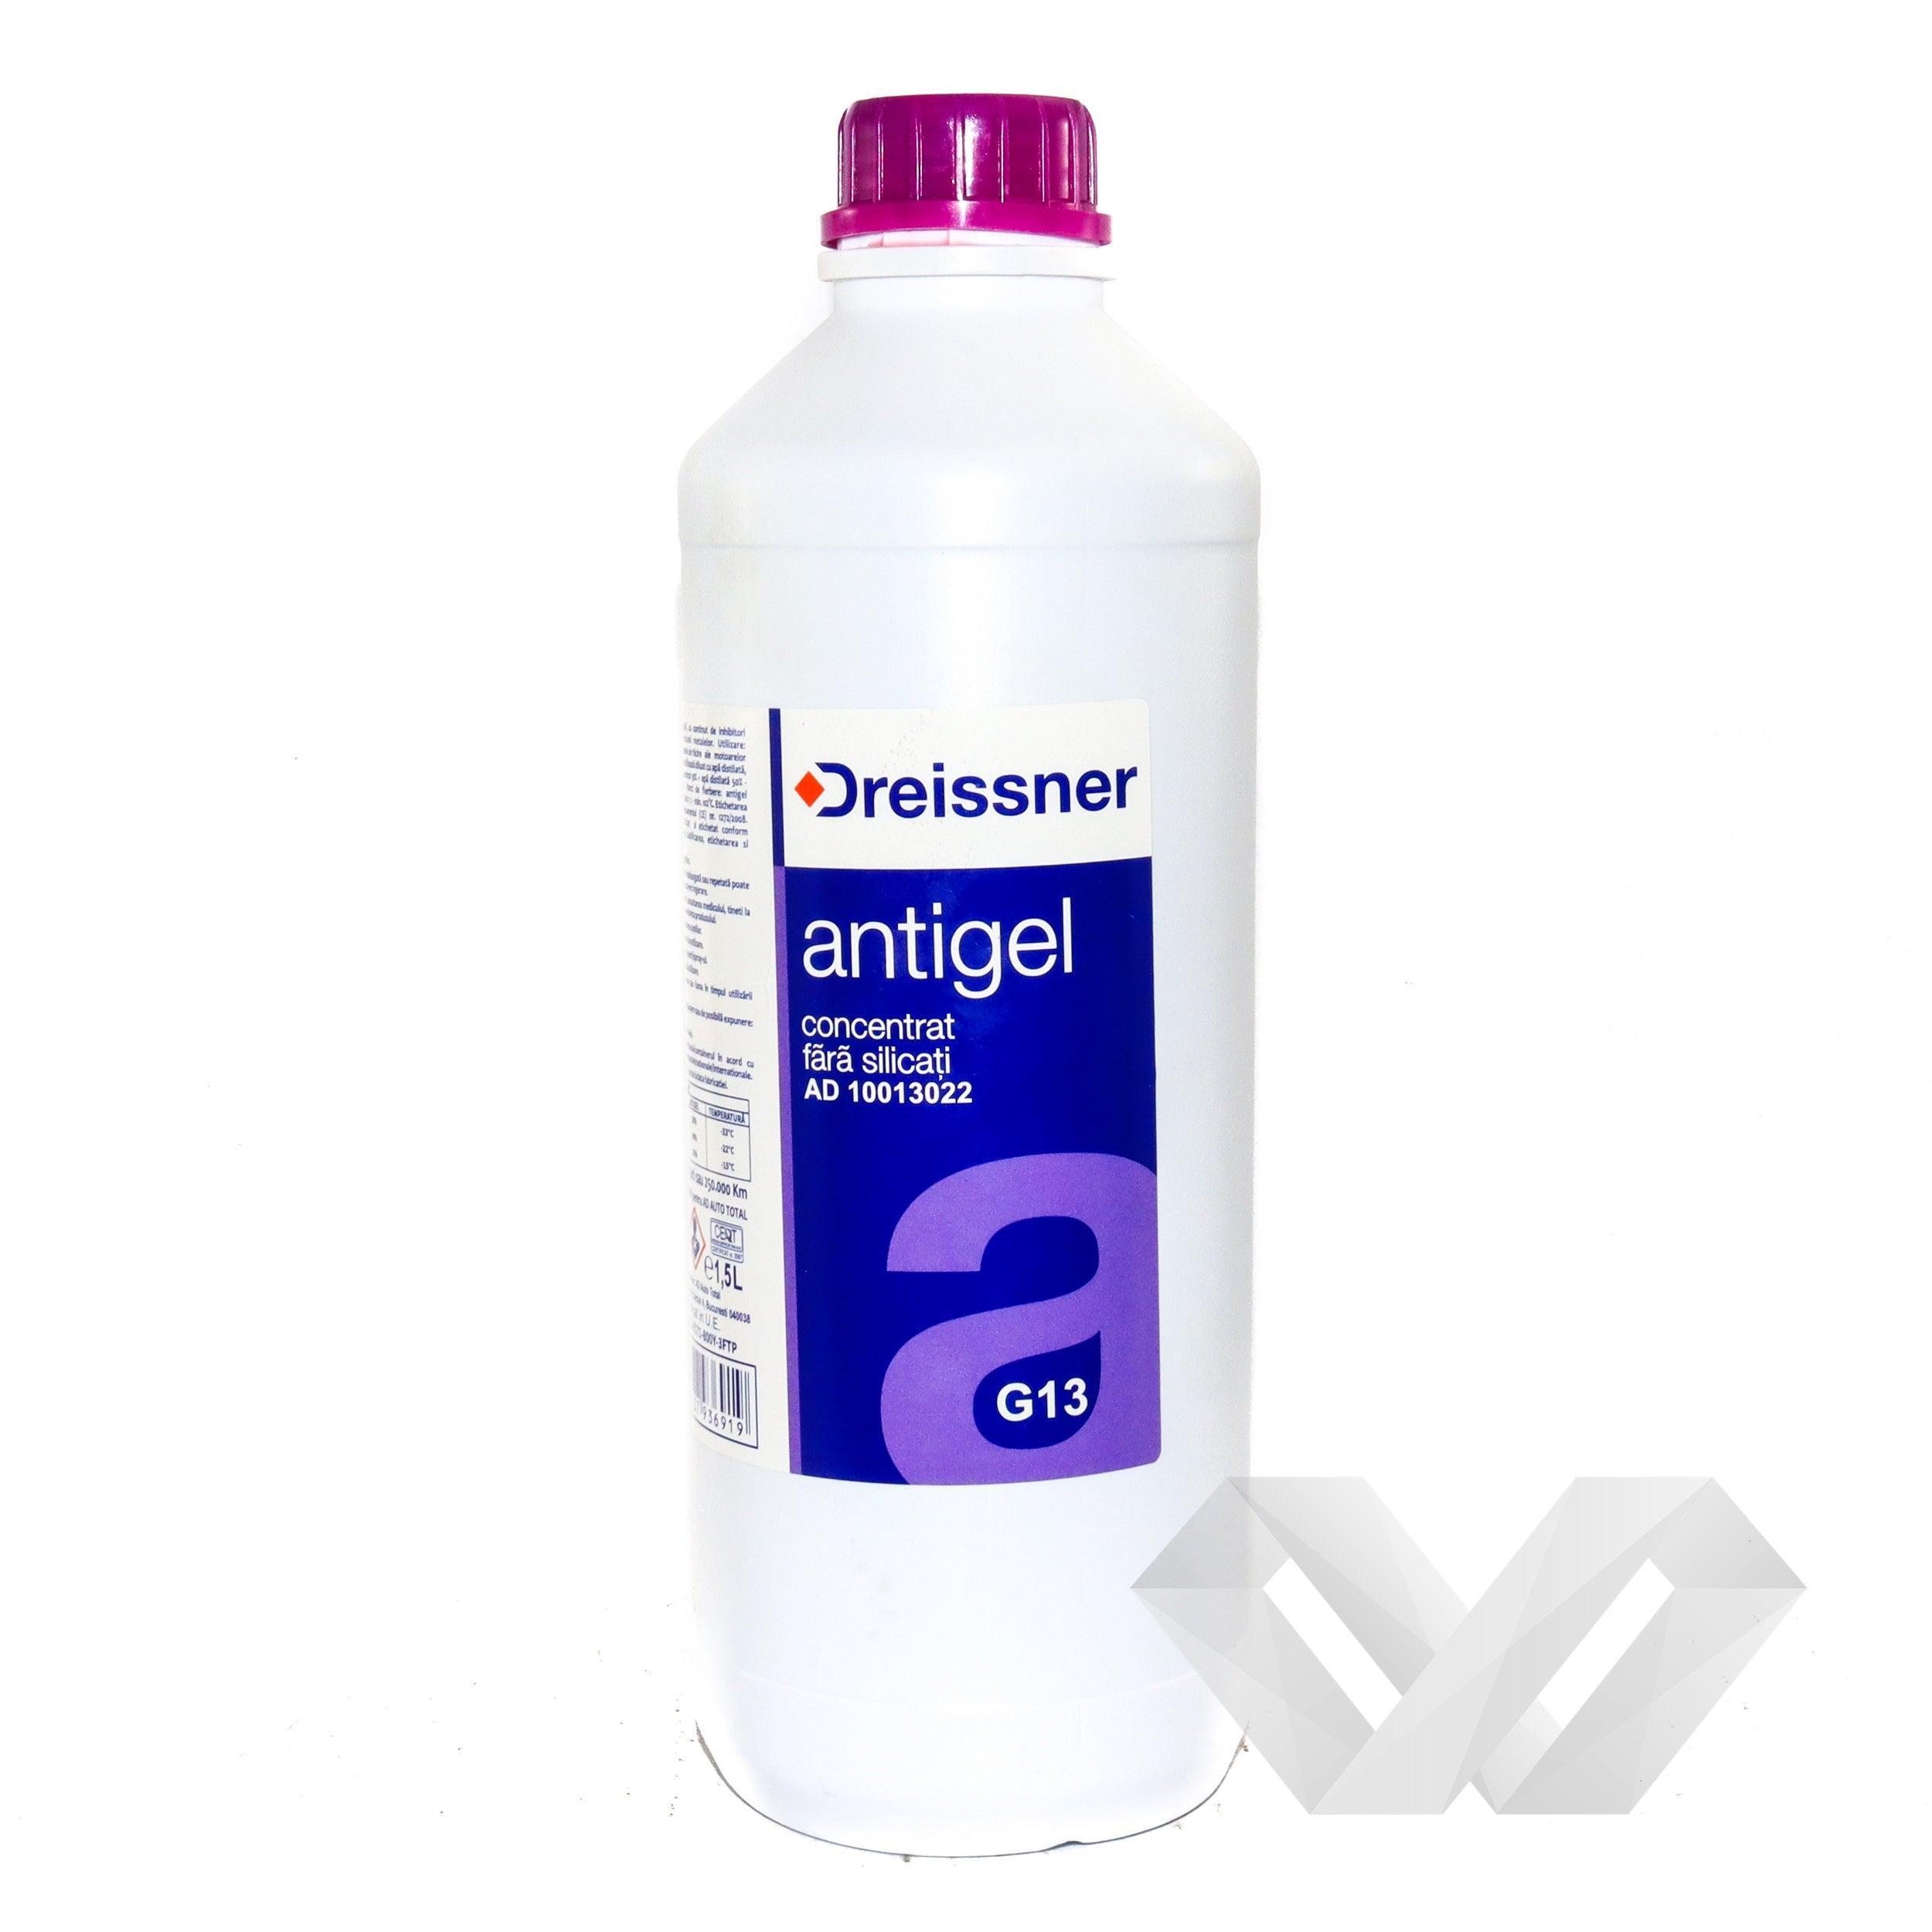 Antigel G13 concentrat Dreissner, 1,5 L